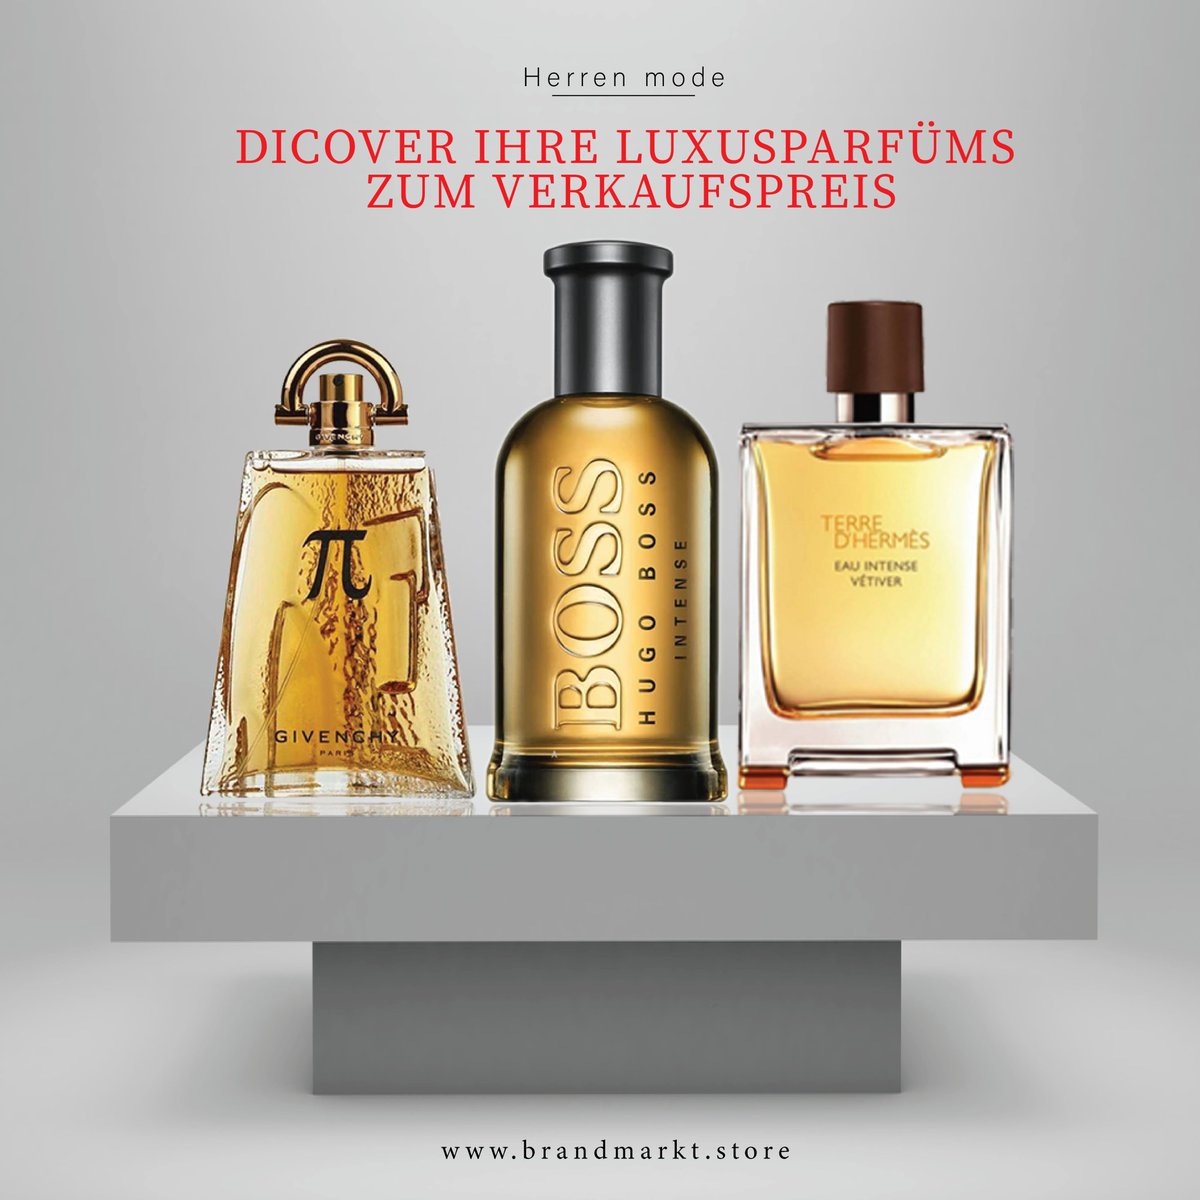 #Sparen Sie viel🤩 bei Ihrem Lieblingsartikel fragrances❤️😍!
🔗brandmarkt.store/product-catego………  
#terredhermes #Switzerland #stgallen #HUGOBOSS #OOTD #OotdStyle #perfumes #scent #marken #fashion #brandstrategy #Ahhhh  #Germans #yesstyle #Gorgeous #gorgeousman